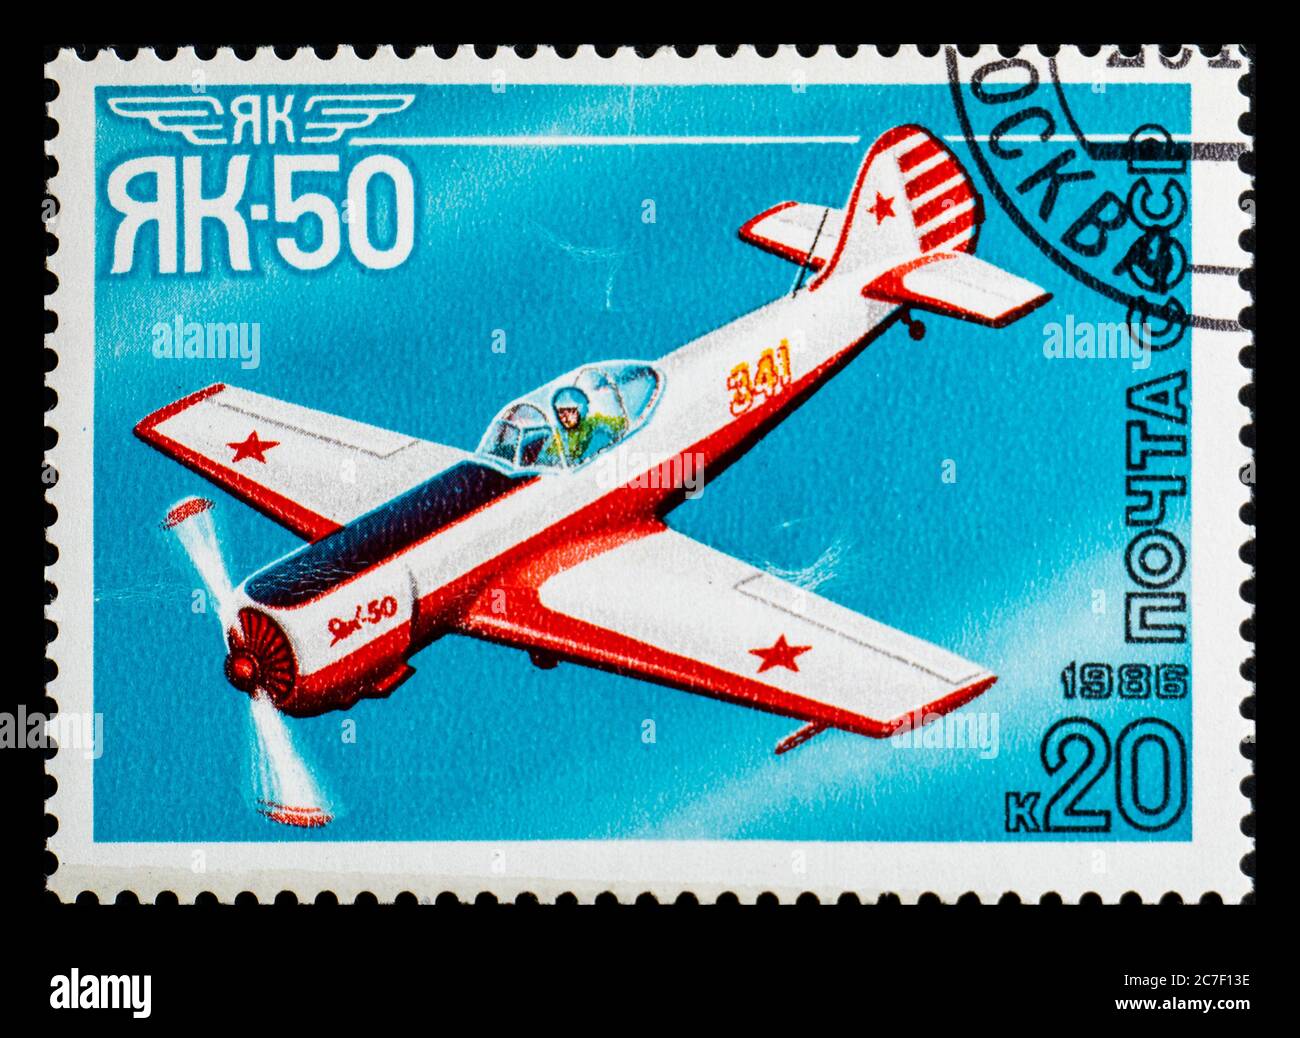 RUSSIA, URSS - CIRCA 1986: Francobollo dall'URSS che mostra l'aereo Yakovlev Yak-50 Foto Stock